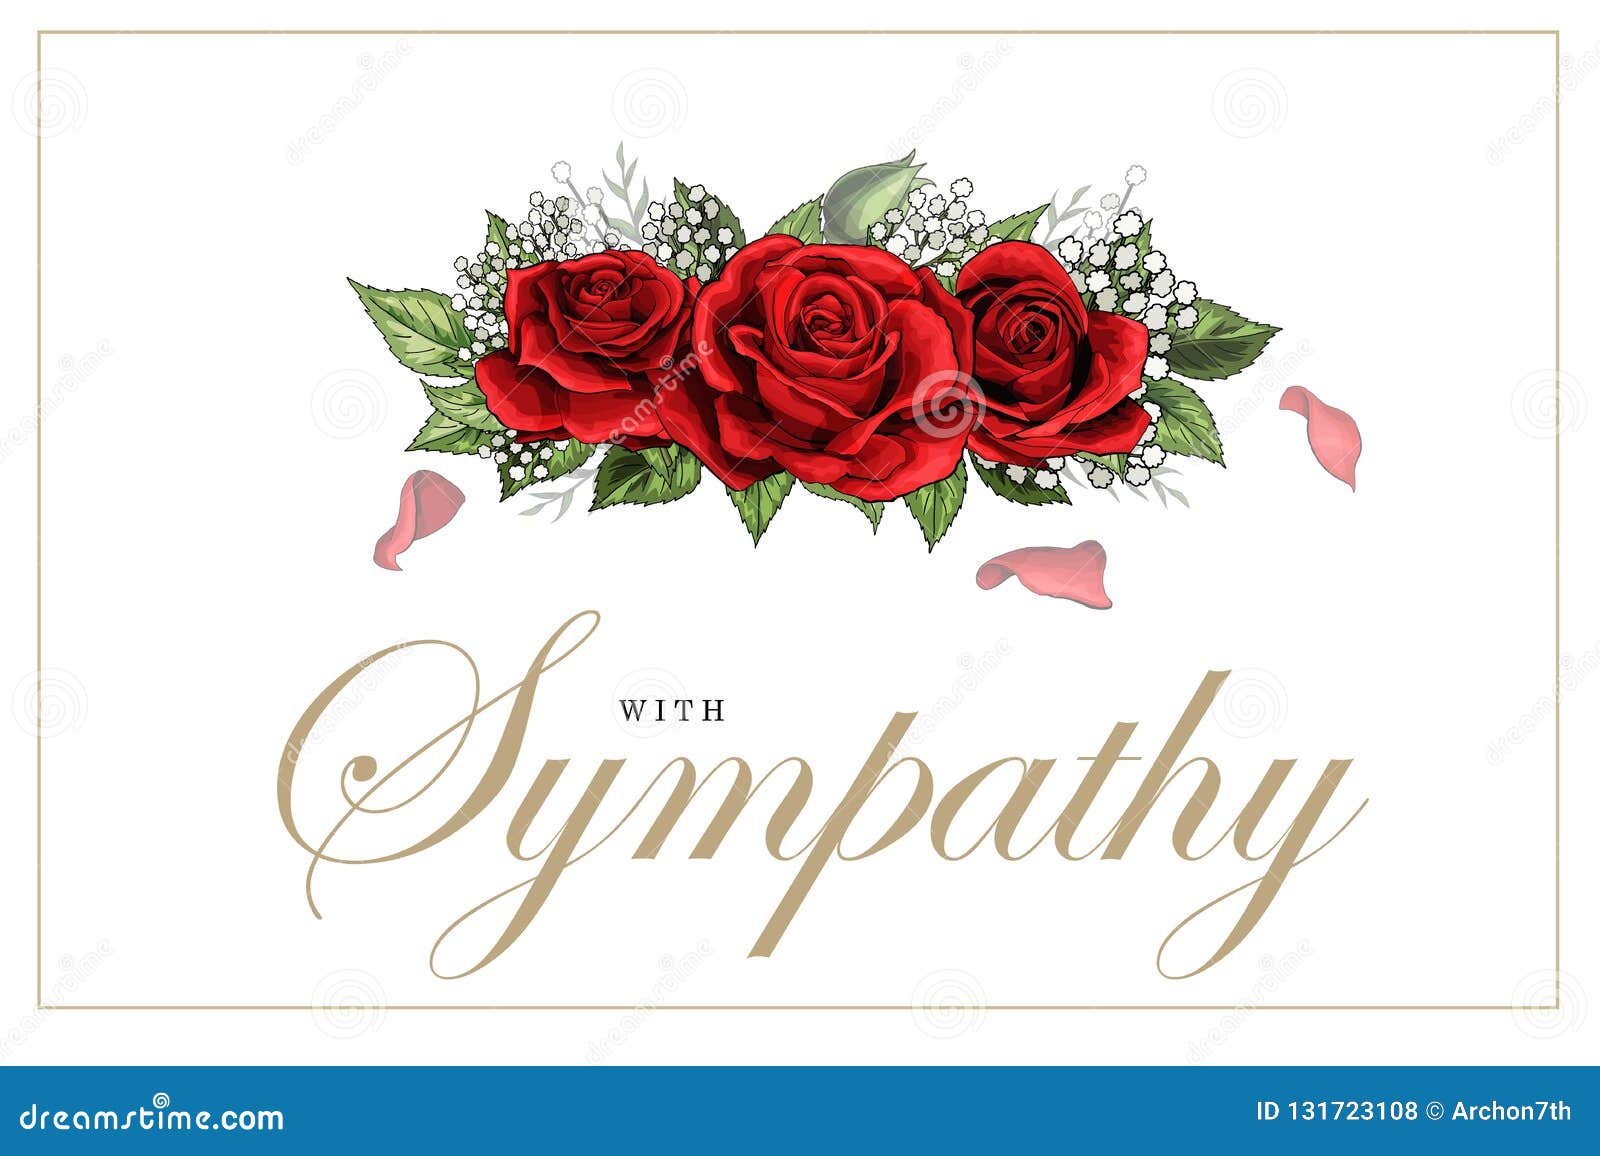 Condolences sympathy card floral frangipani Vector Image